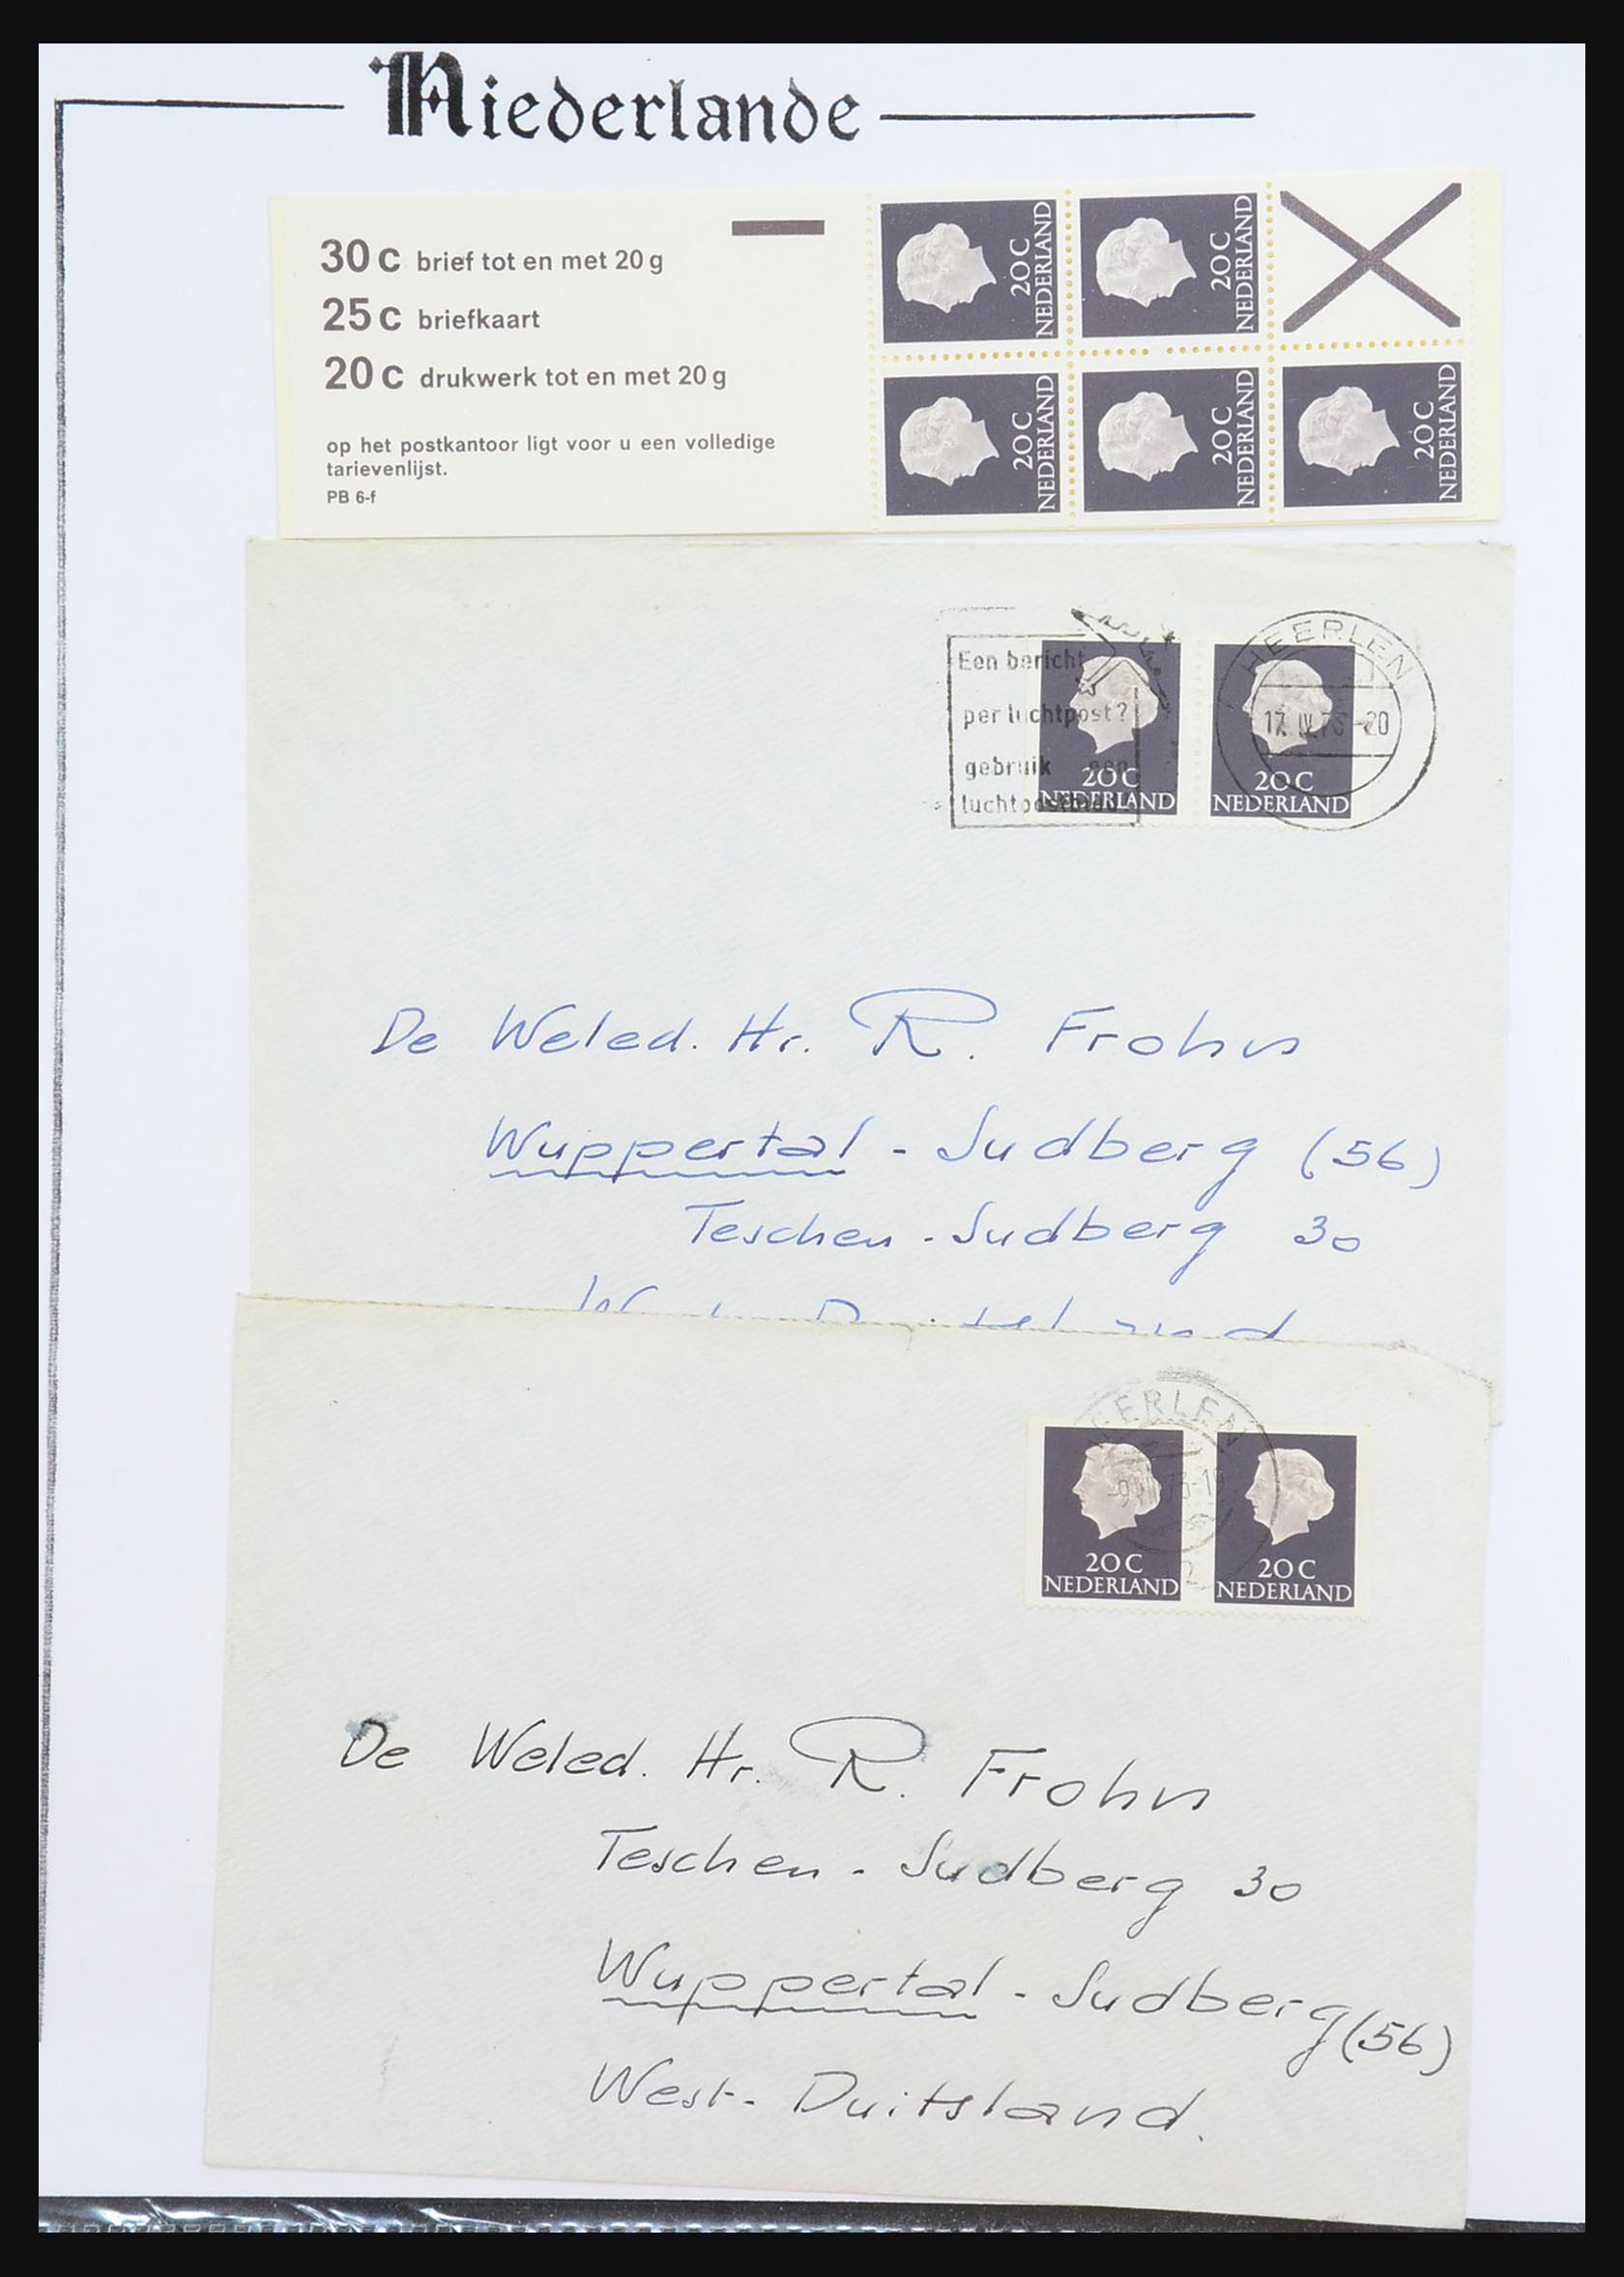 31311 020 - 31311 Nederland postzegelboekjes 1964-1994.